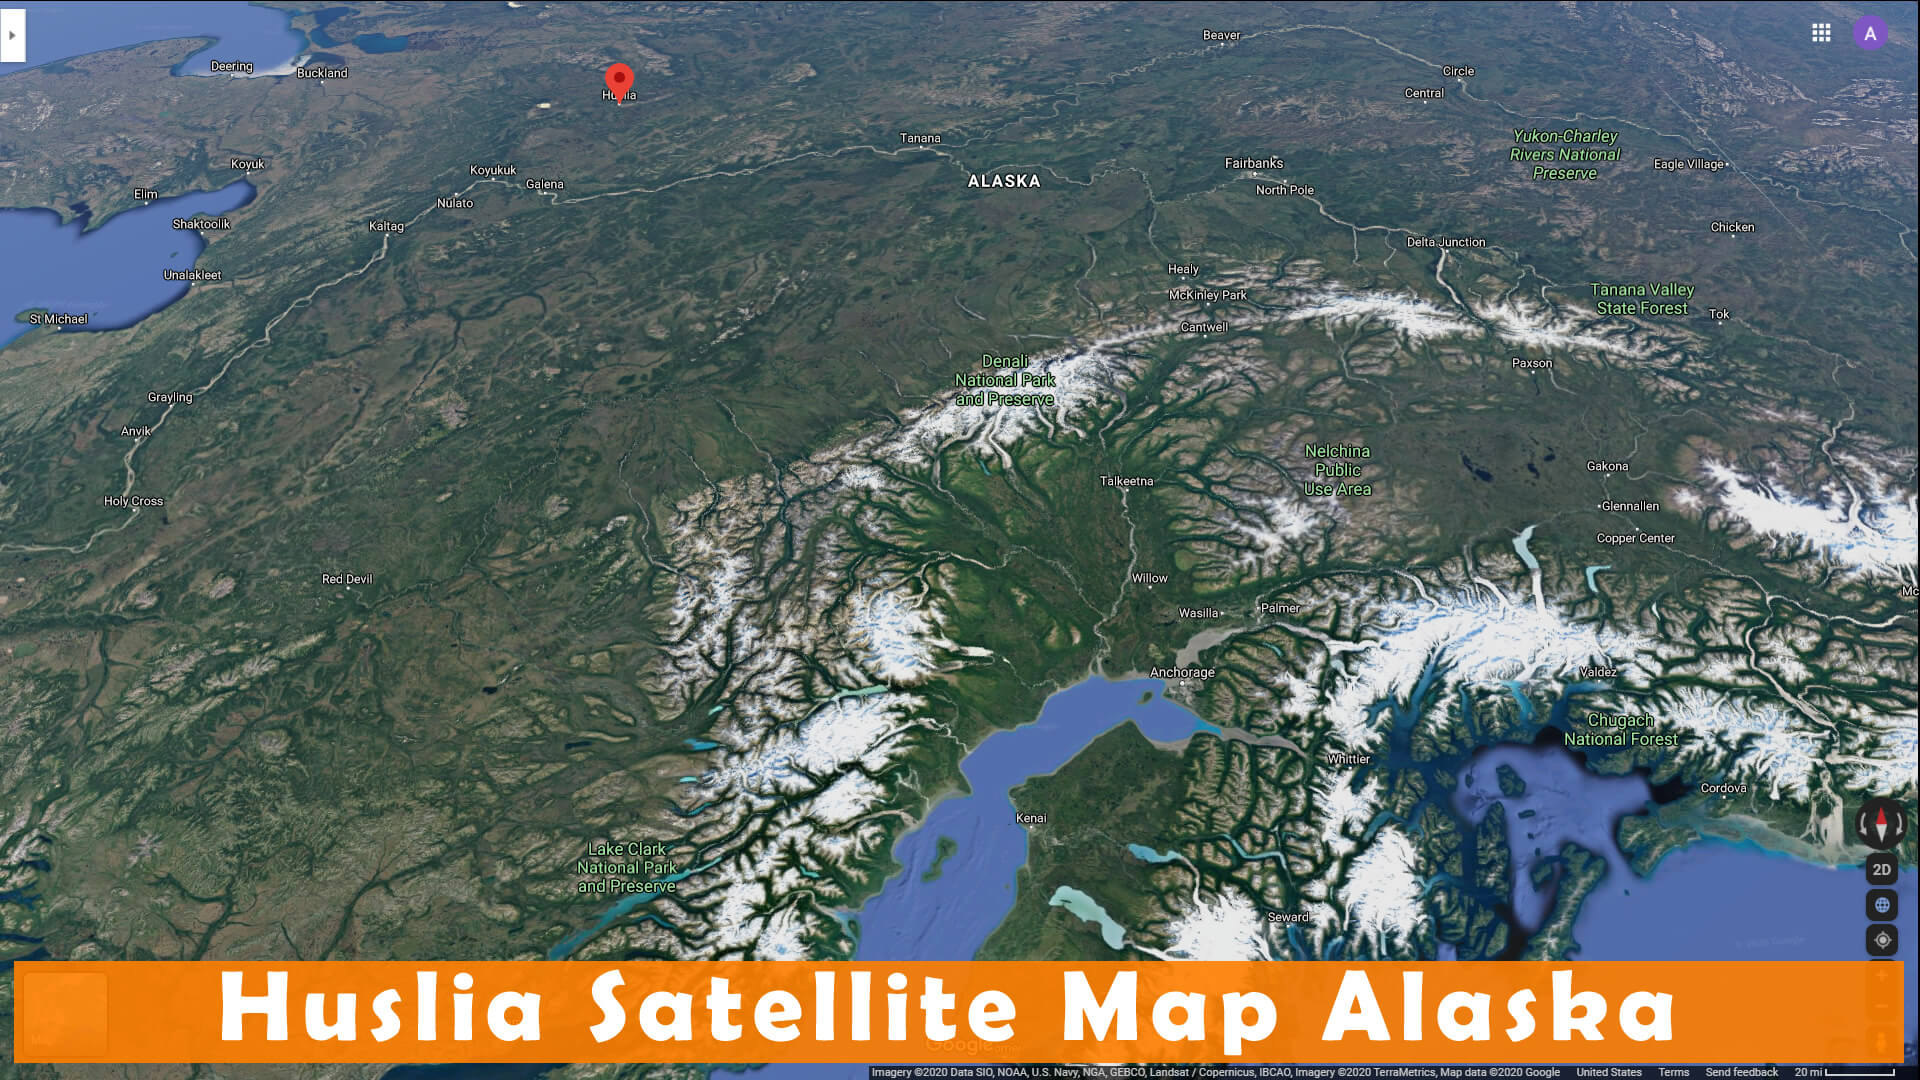 Huslia Satellite Carte Alaska